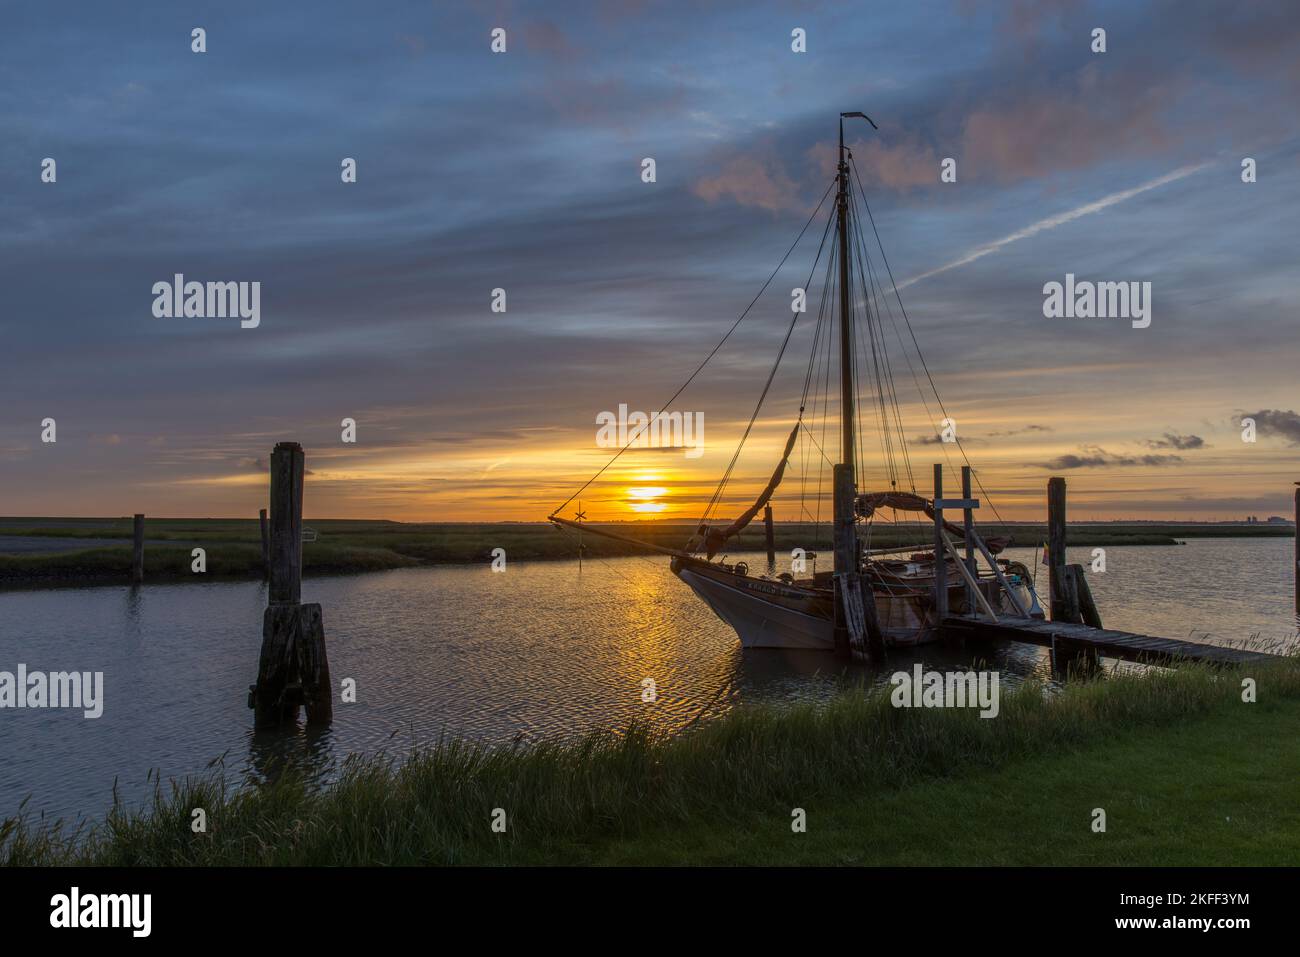 Sonnenaufgang mit Segelschiff am Süderhafen, Insel Nordstrand, Nordfriesland, Schleswig Holstein, Deutschland Stockfoto